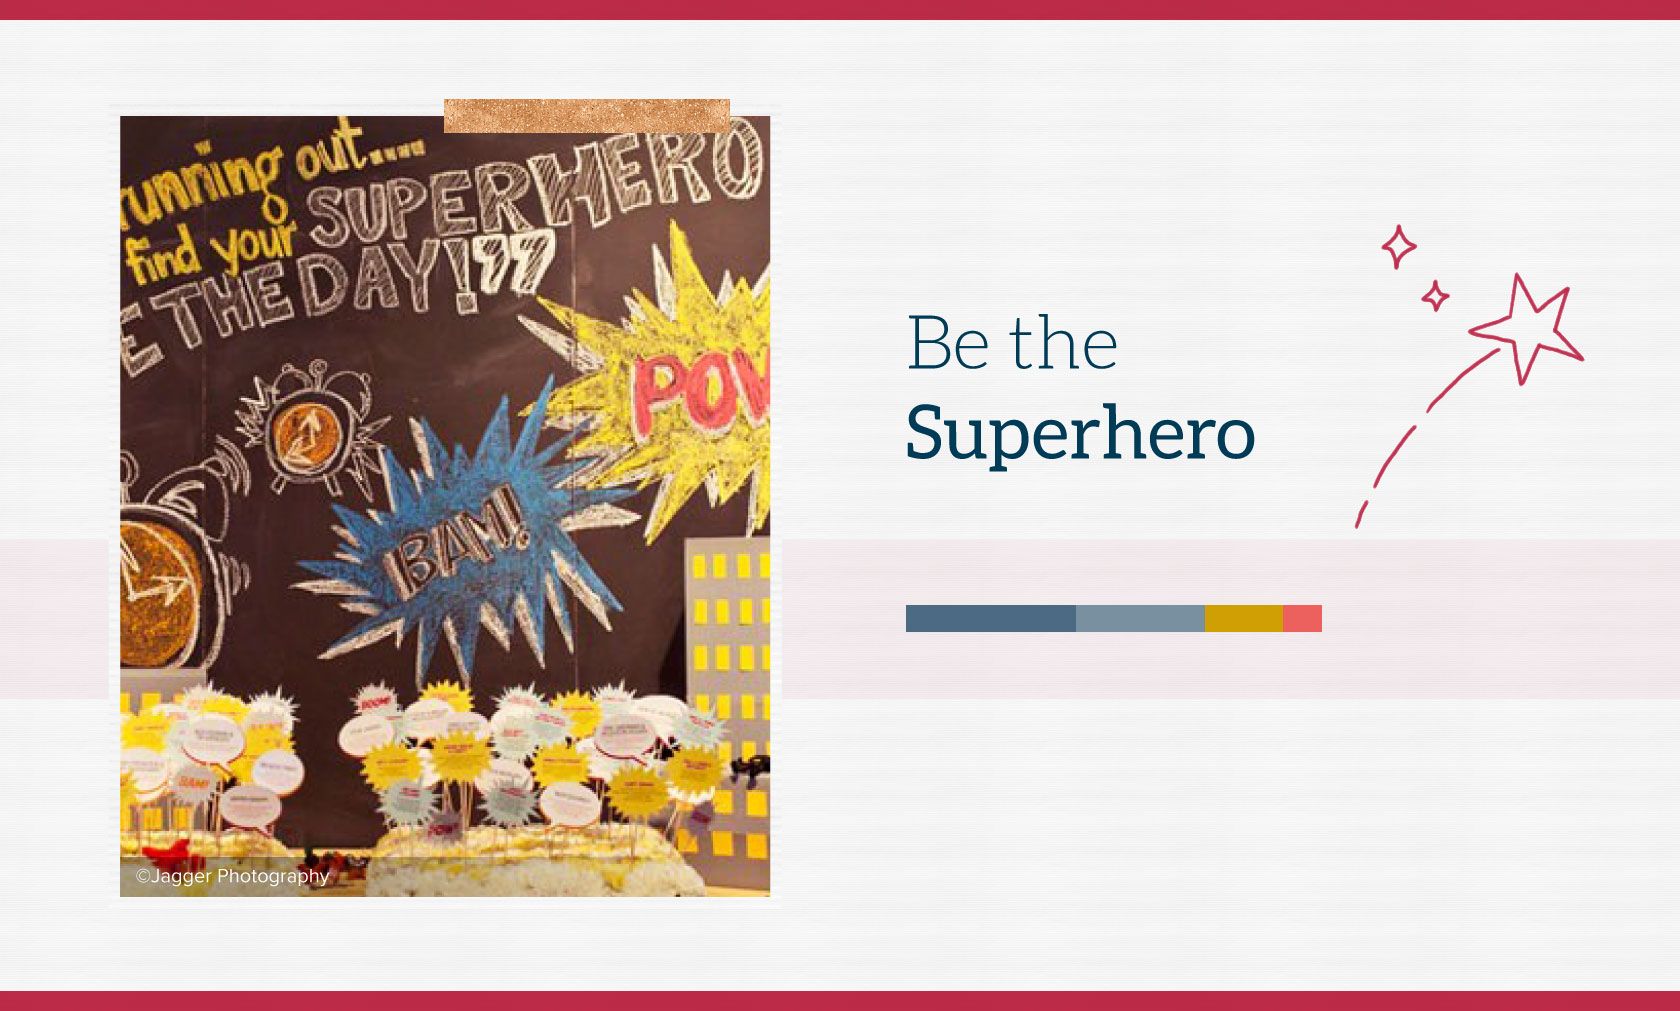 Be the Superhero